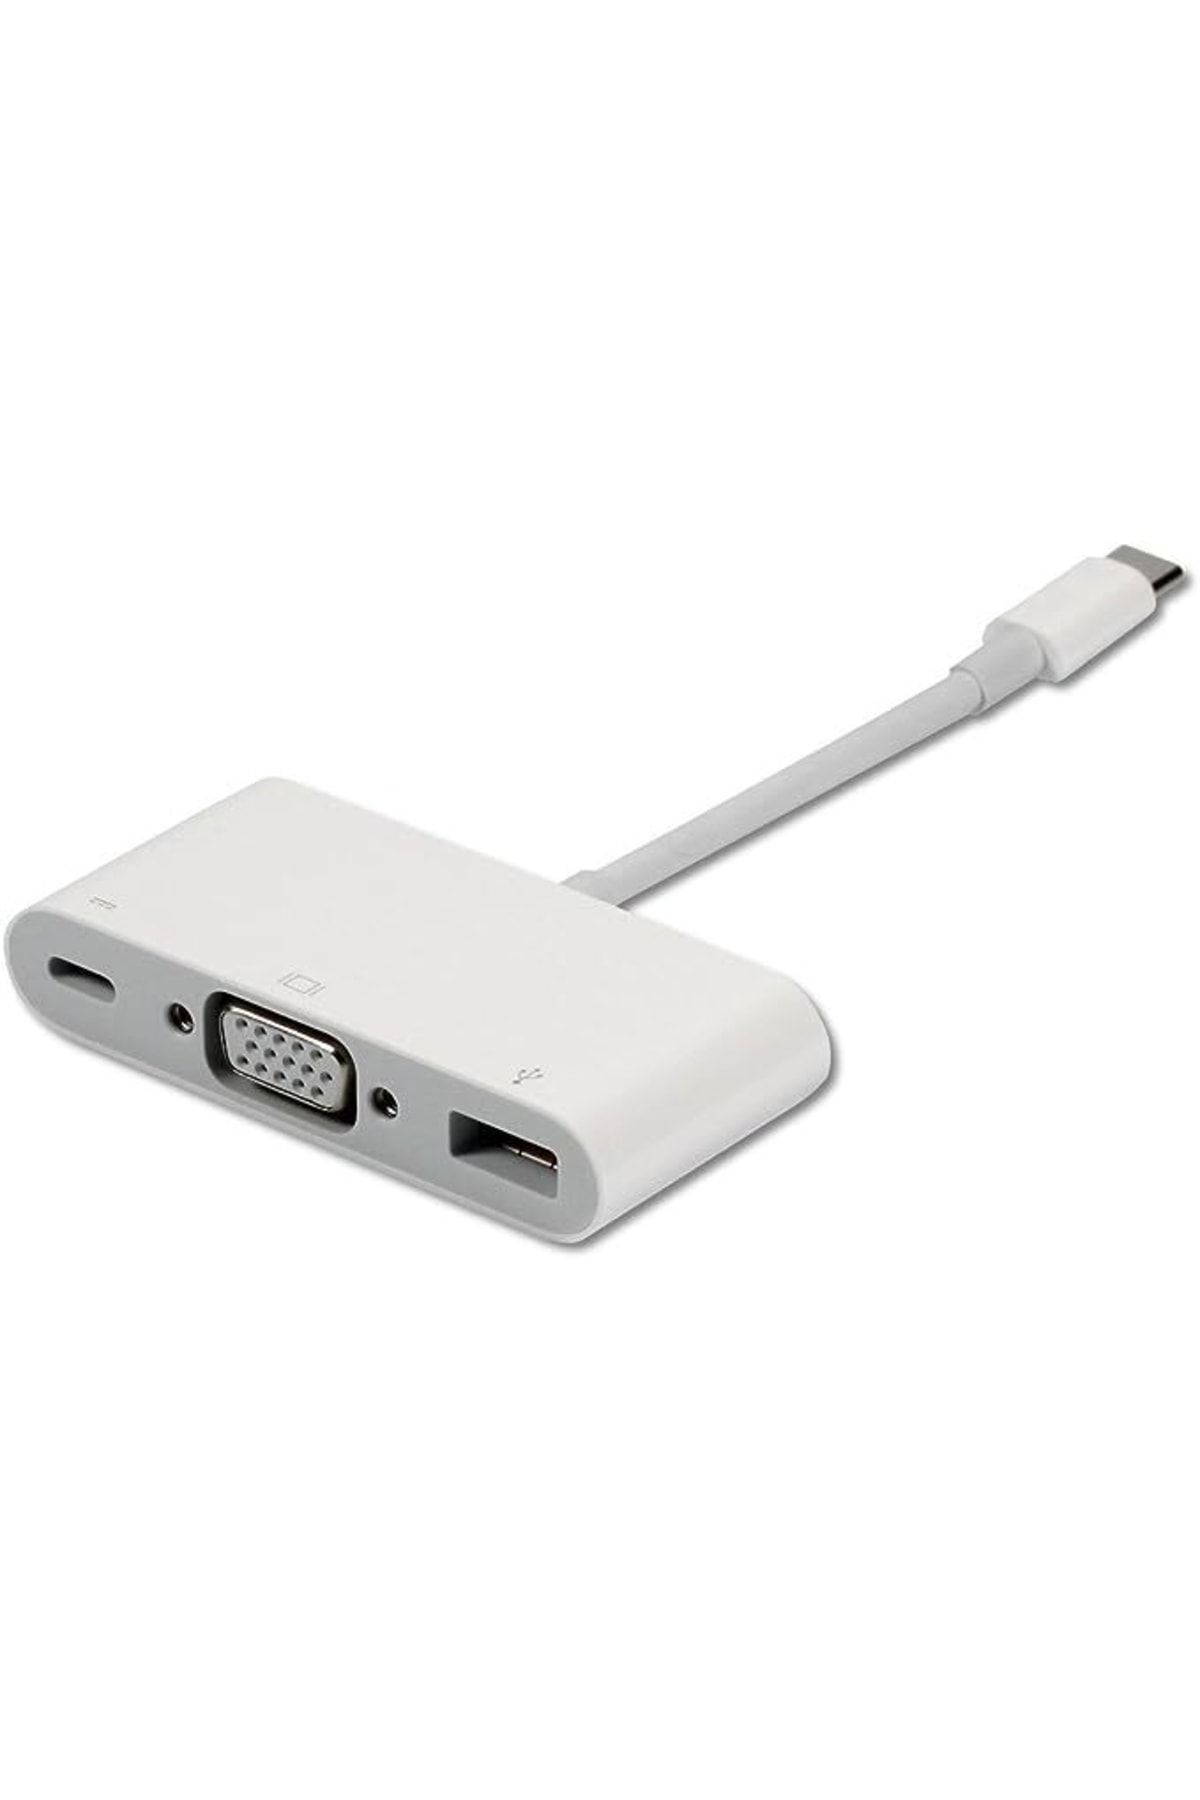 Usb c vga. Apple USB-C VGA Multiport Adapter. Apple mj1l2zm/a USB-C VGA Adapter. Apple USB-C to VGA [mj1l2zm/a]. Адаптер Apple Digital av Multiport Adapter a2119.